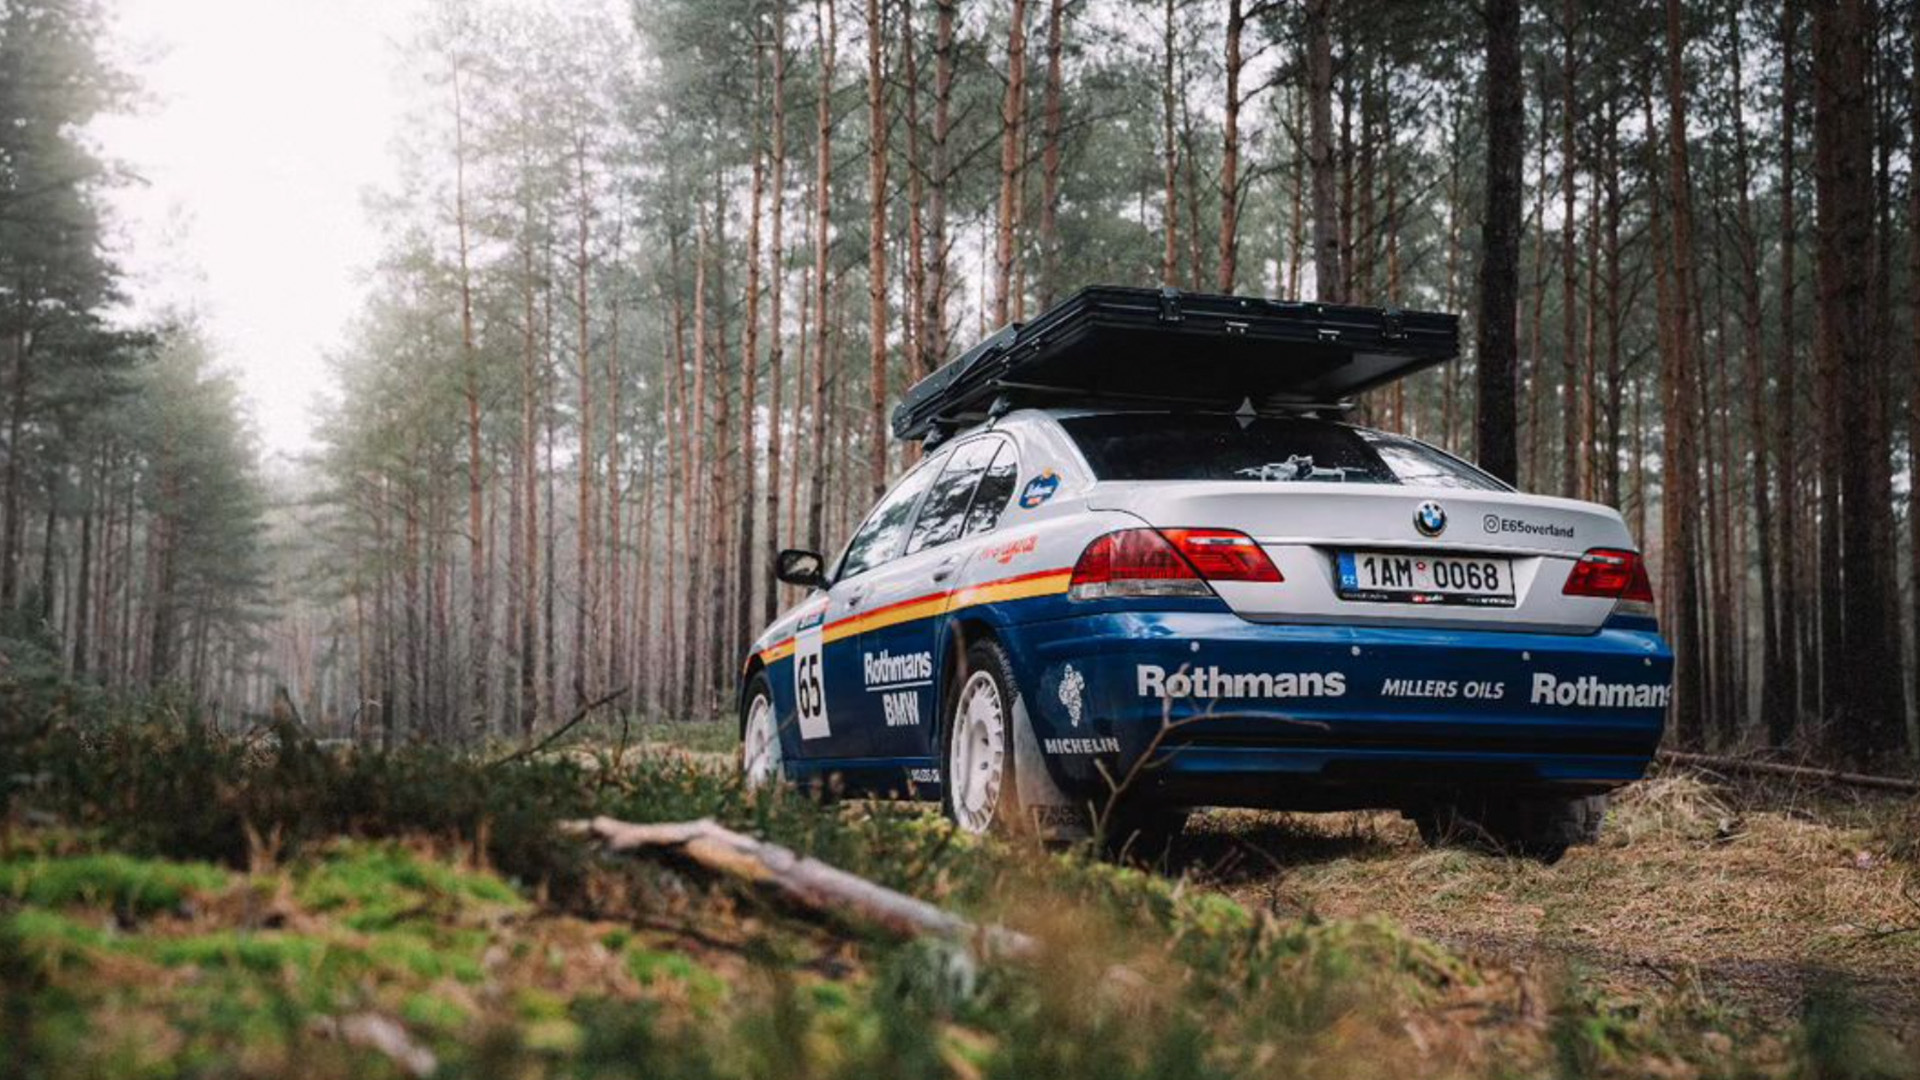 Vista trasera del BMW Serie 7 4x4 preparado para rally en un entorno boscoso